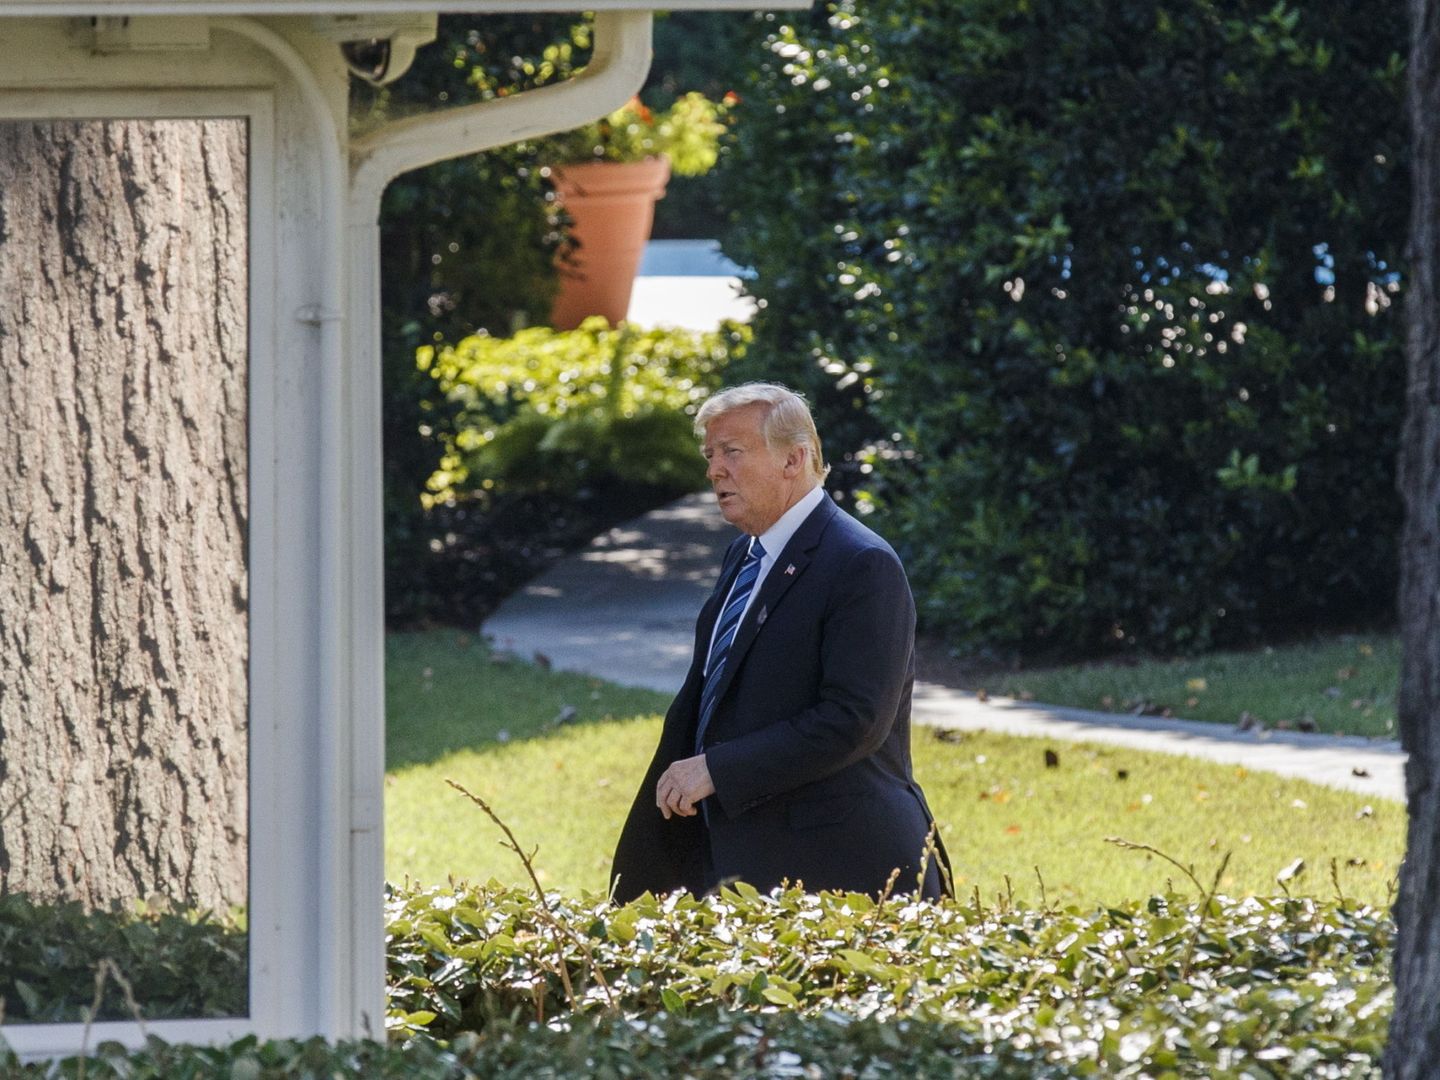 El presidente de los Estados Unidos, Donald Trump, sale de la oficina oval para abordar el Marine One. (EFE)